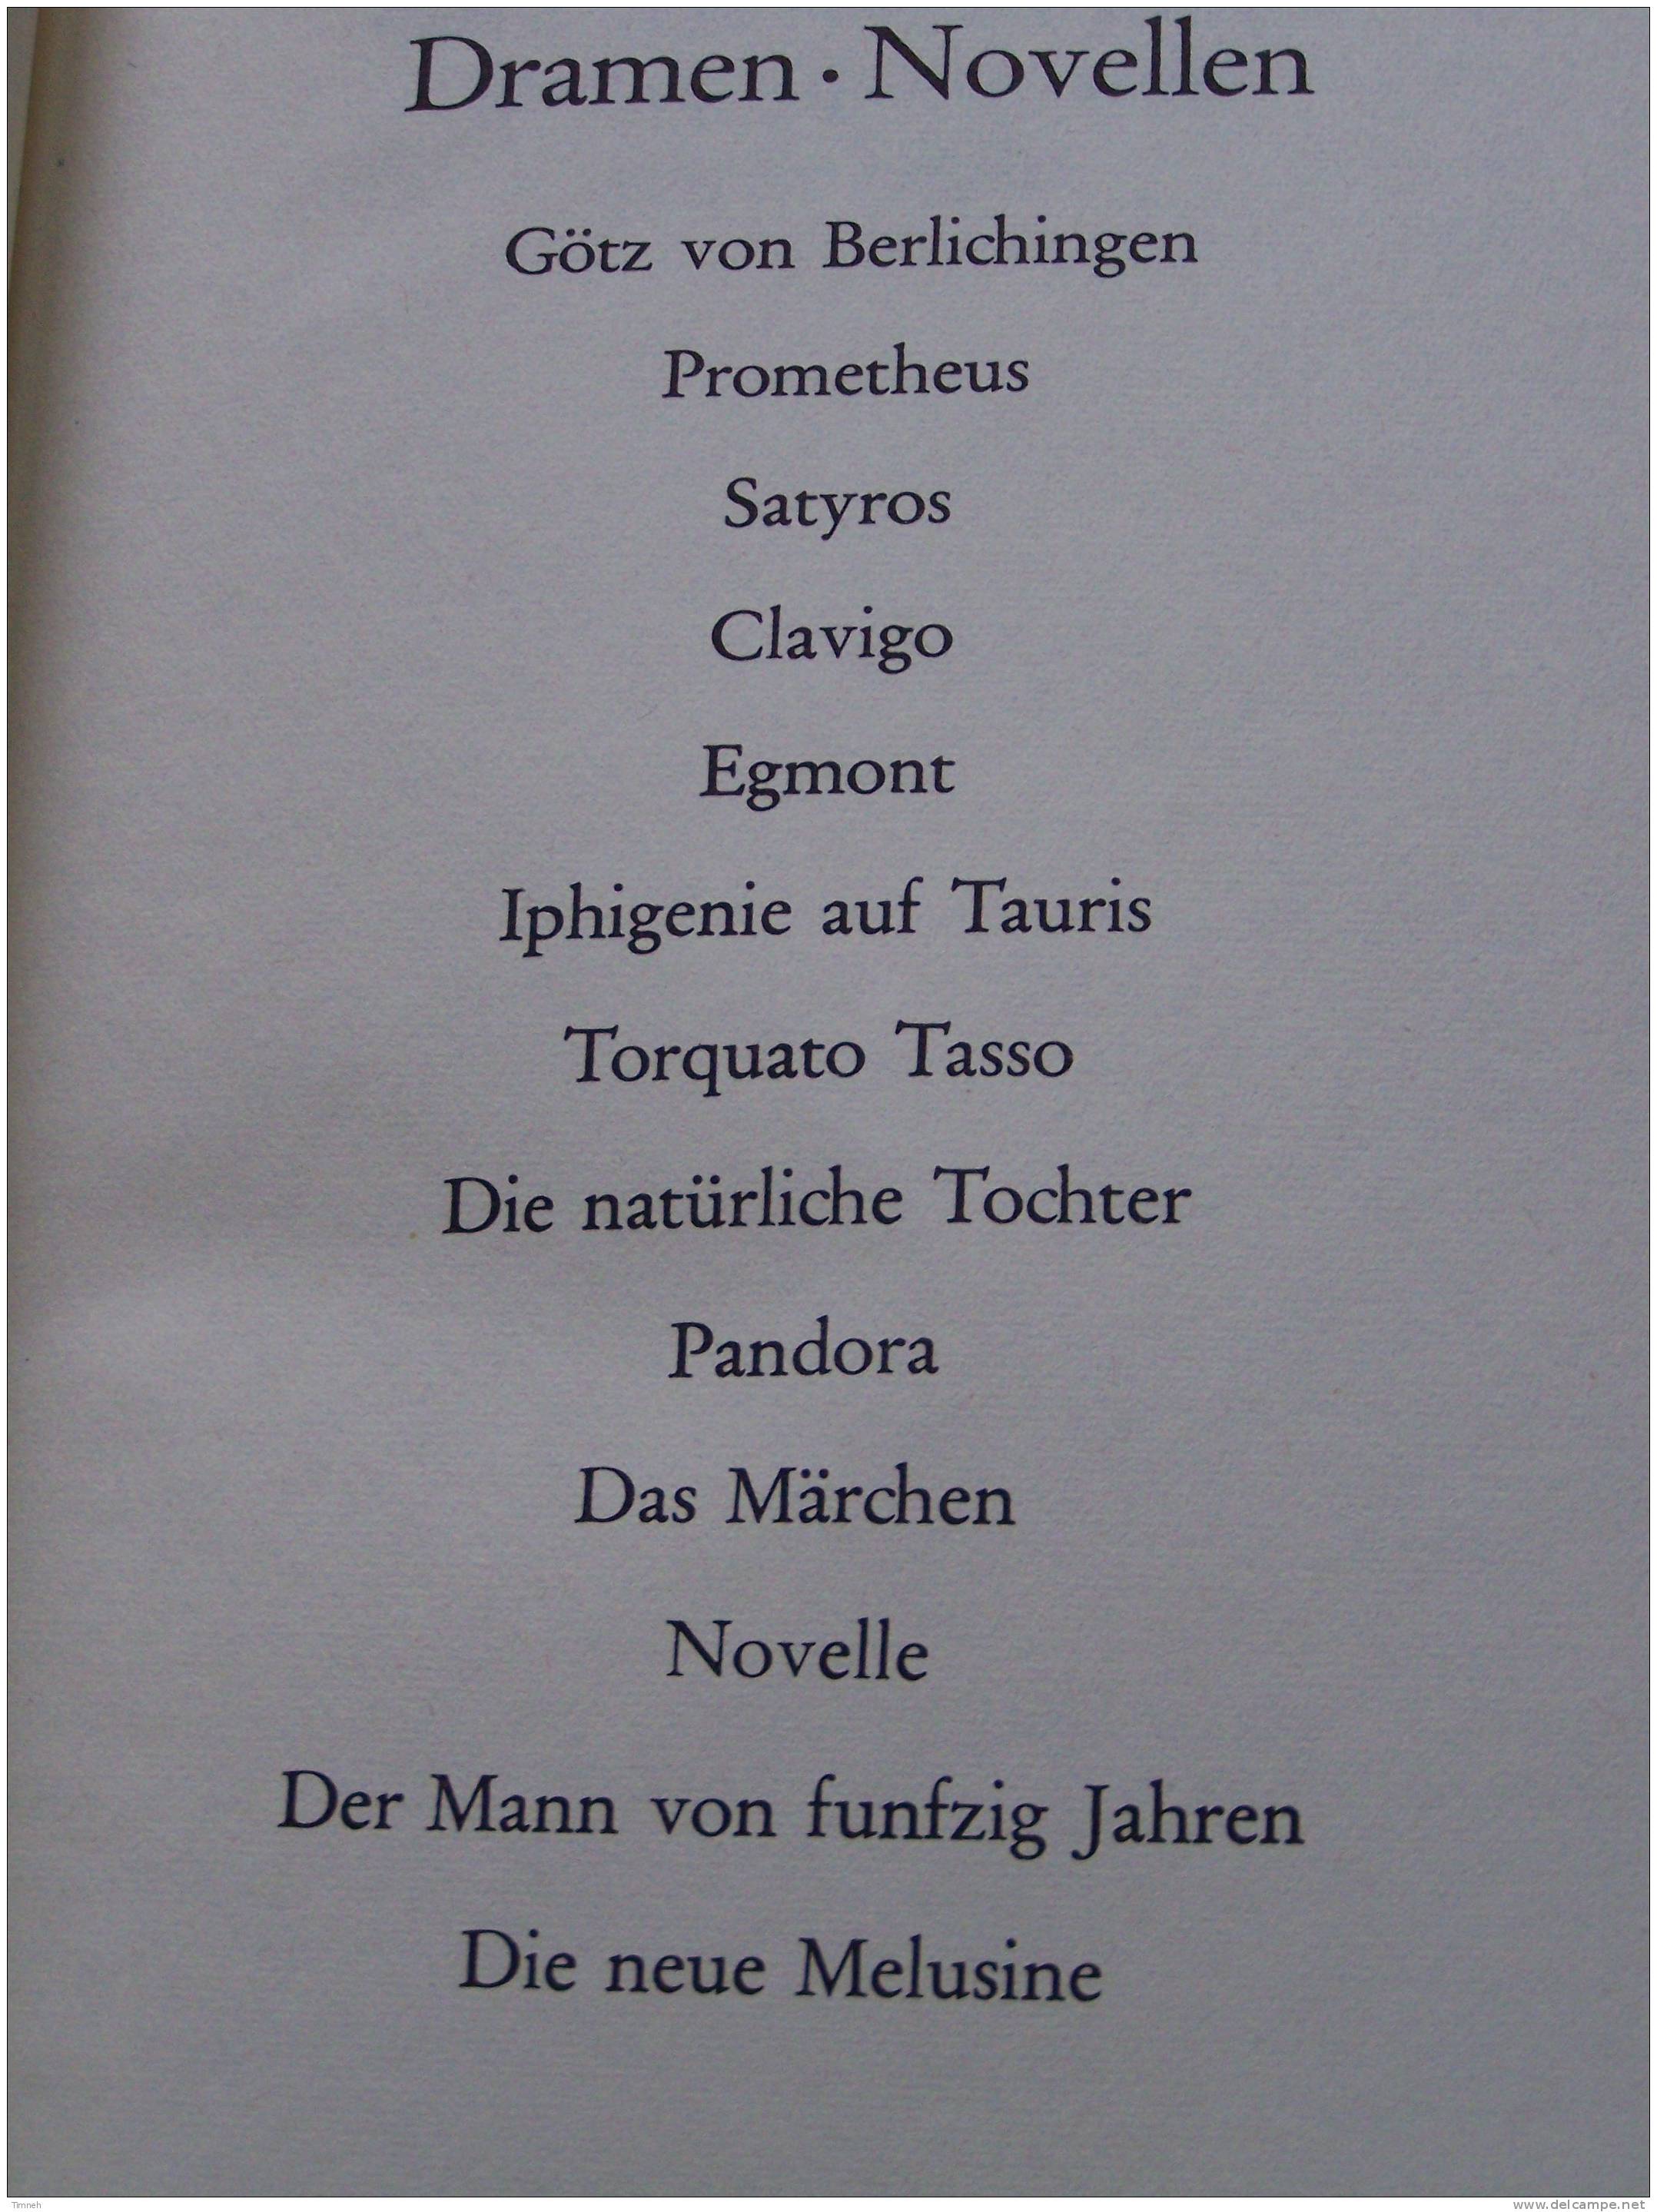 GOETHE WERKE - 6 BANDEN TOMES - Insel Verlag 1965 - WERTHER MEISTER FAUST GEDICHTE DICHTUNG WARHEIT - Autori Internazionali